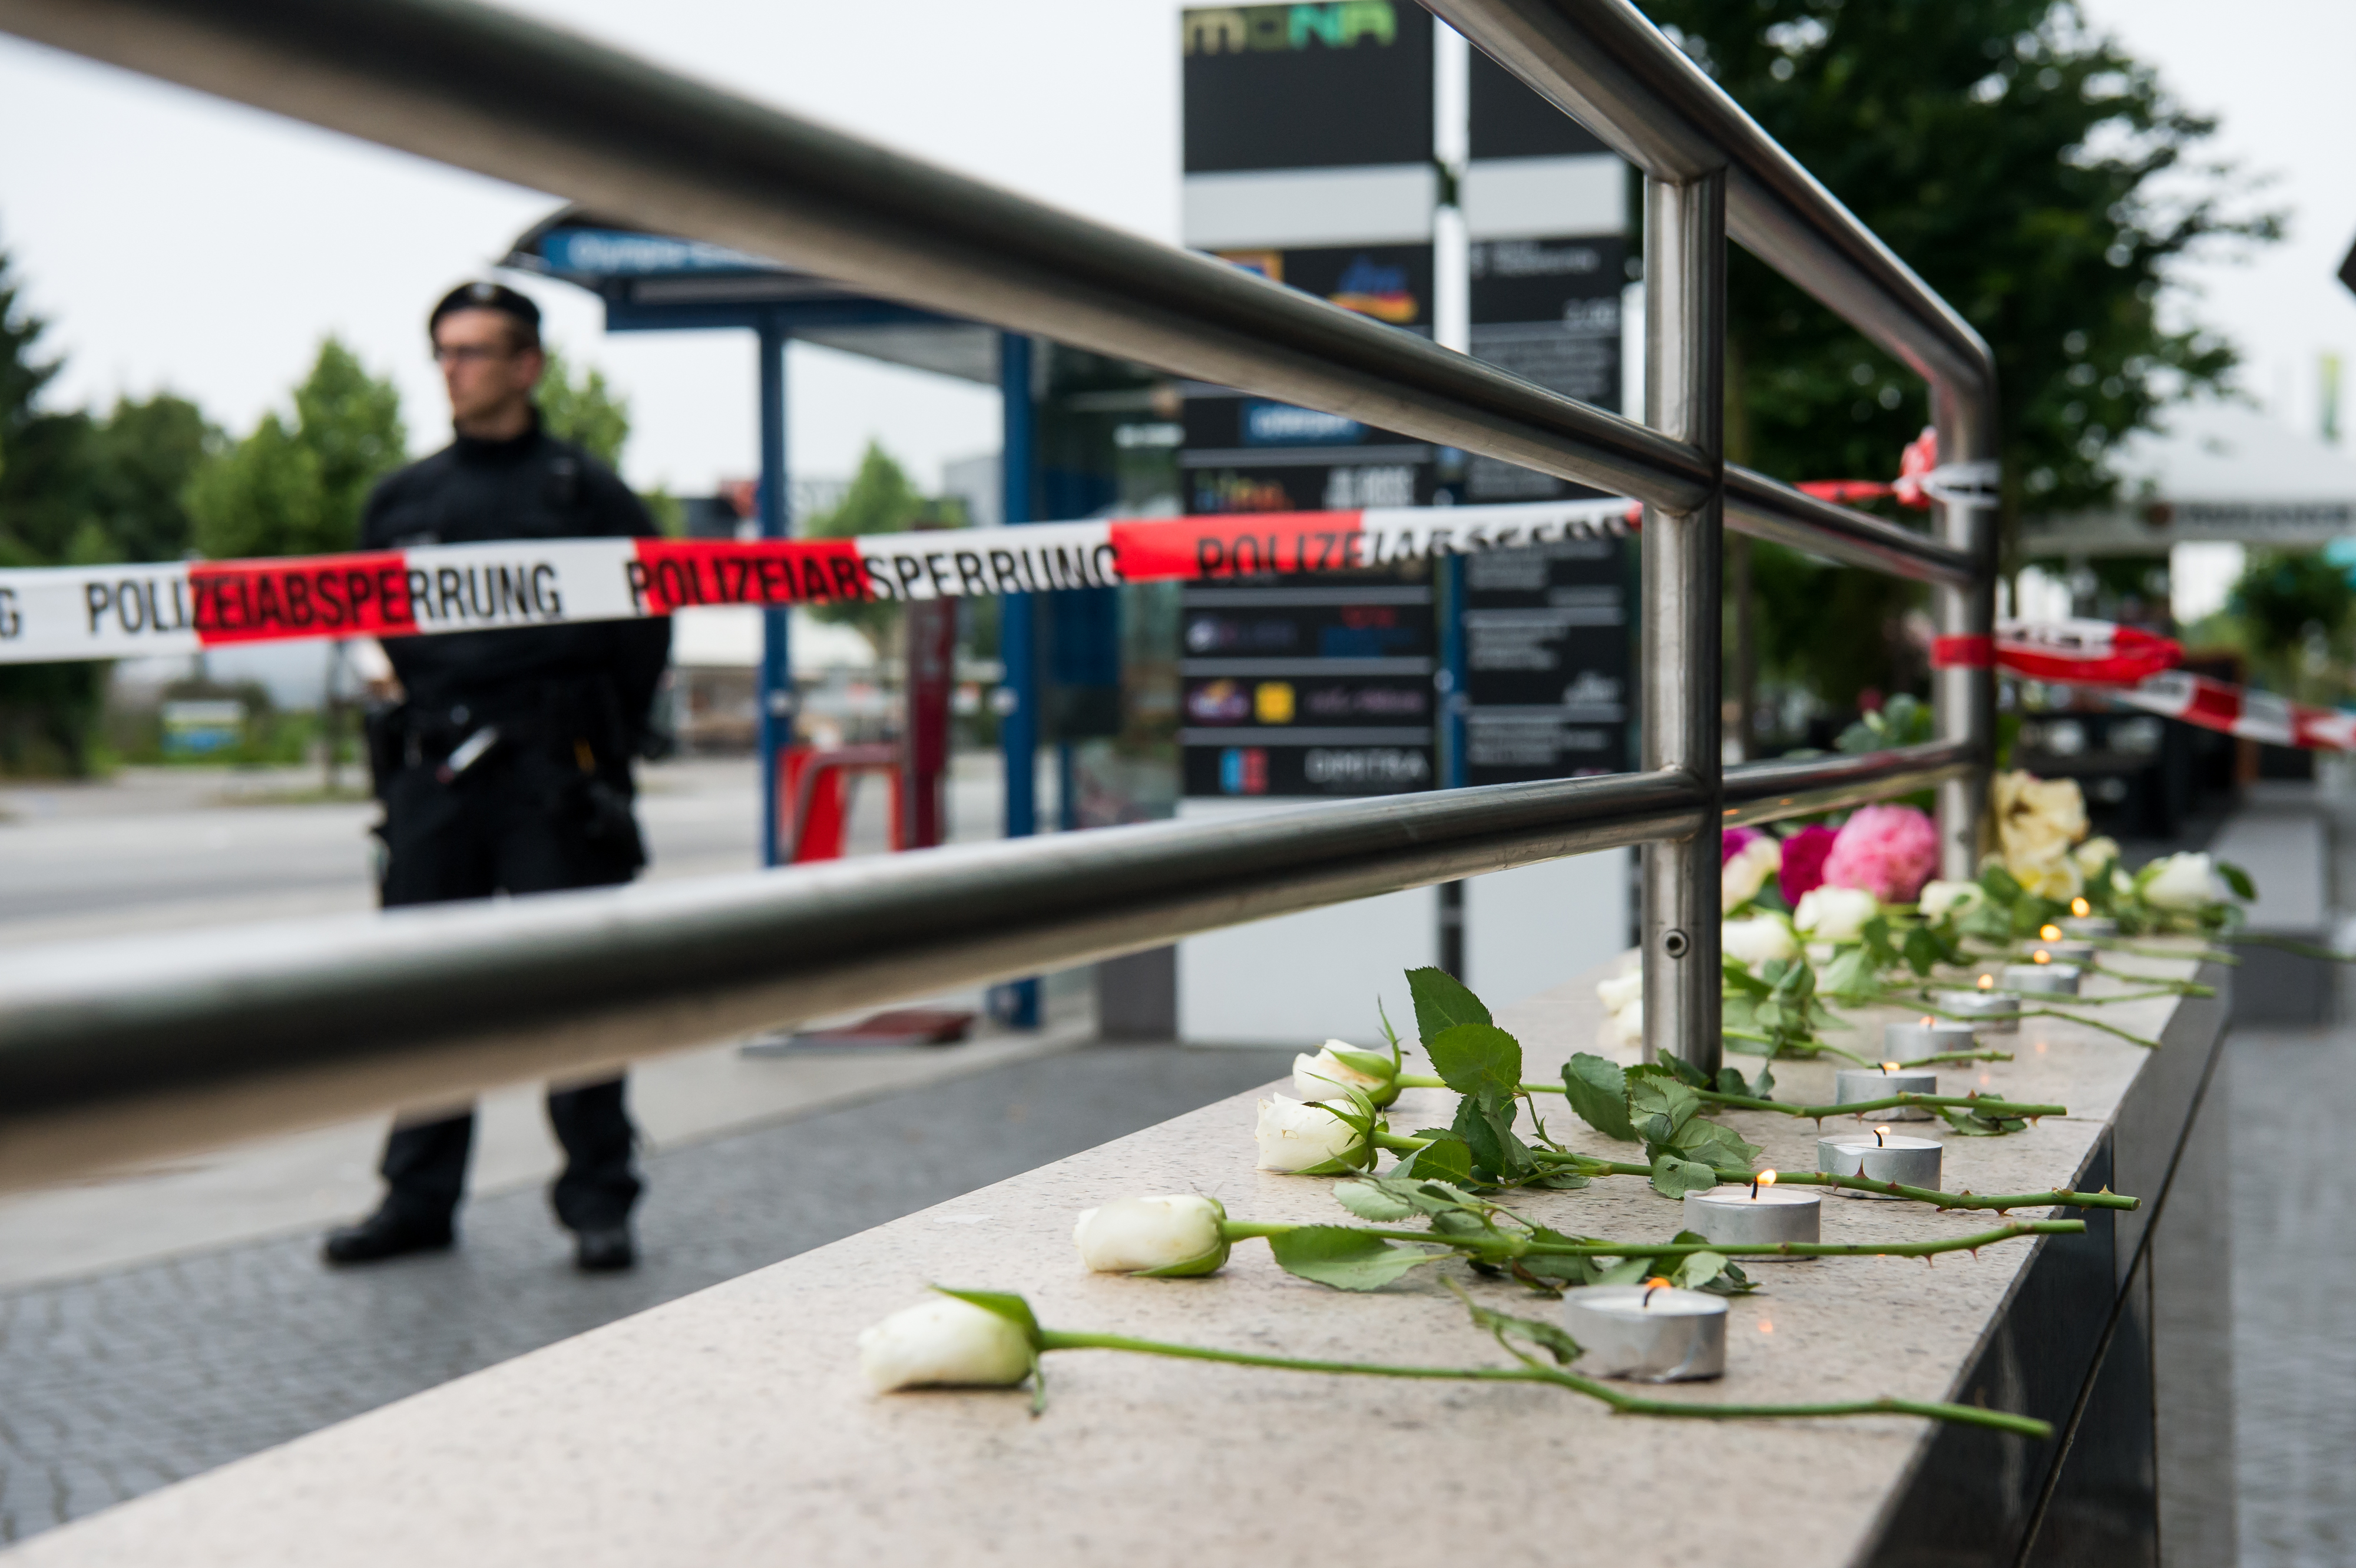 Amokläufer in München erschoss sich vor Augen der Polizisten